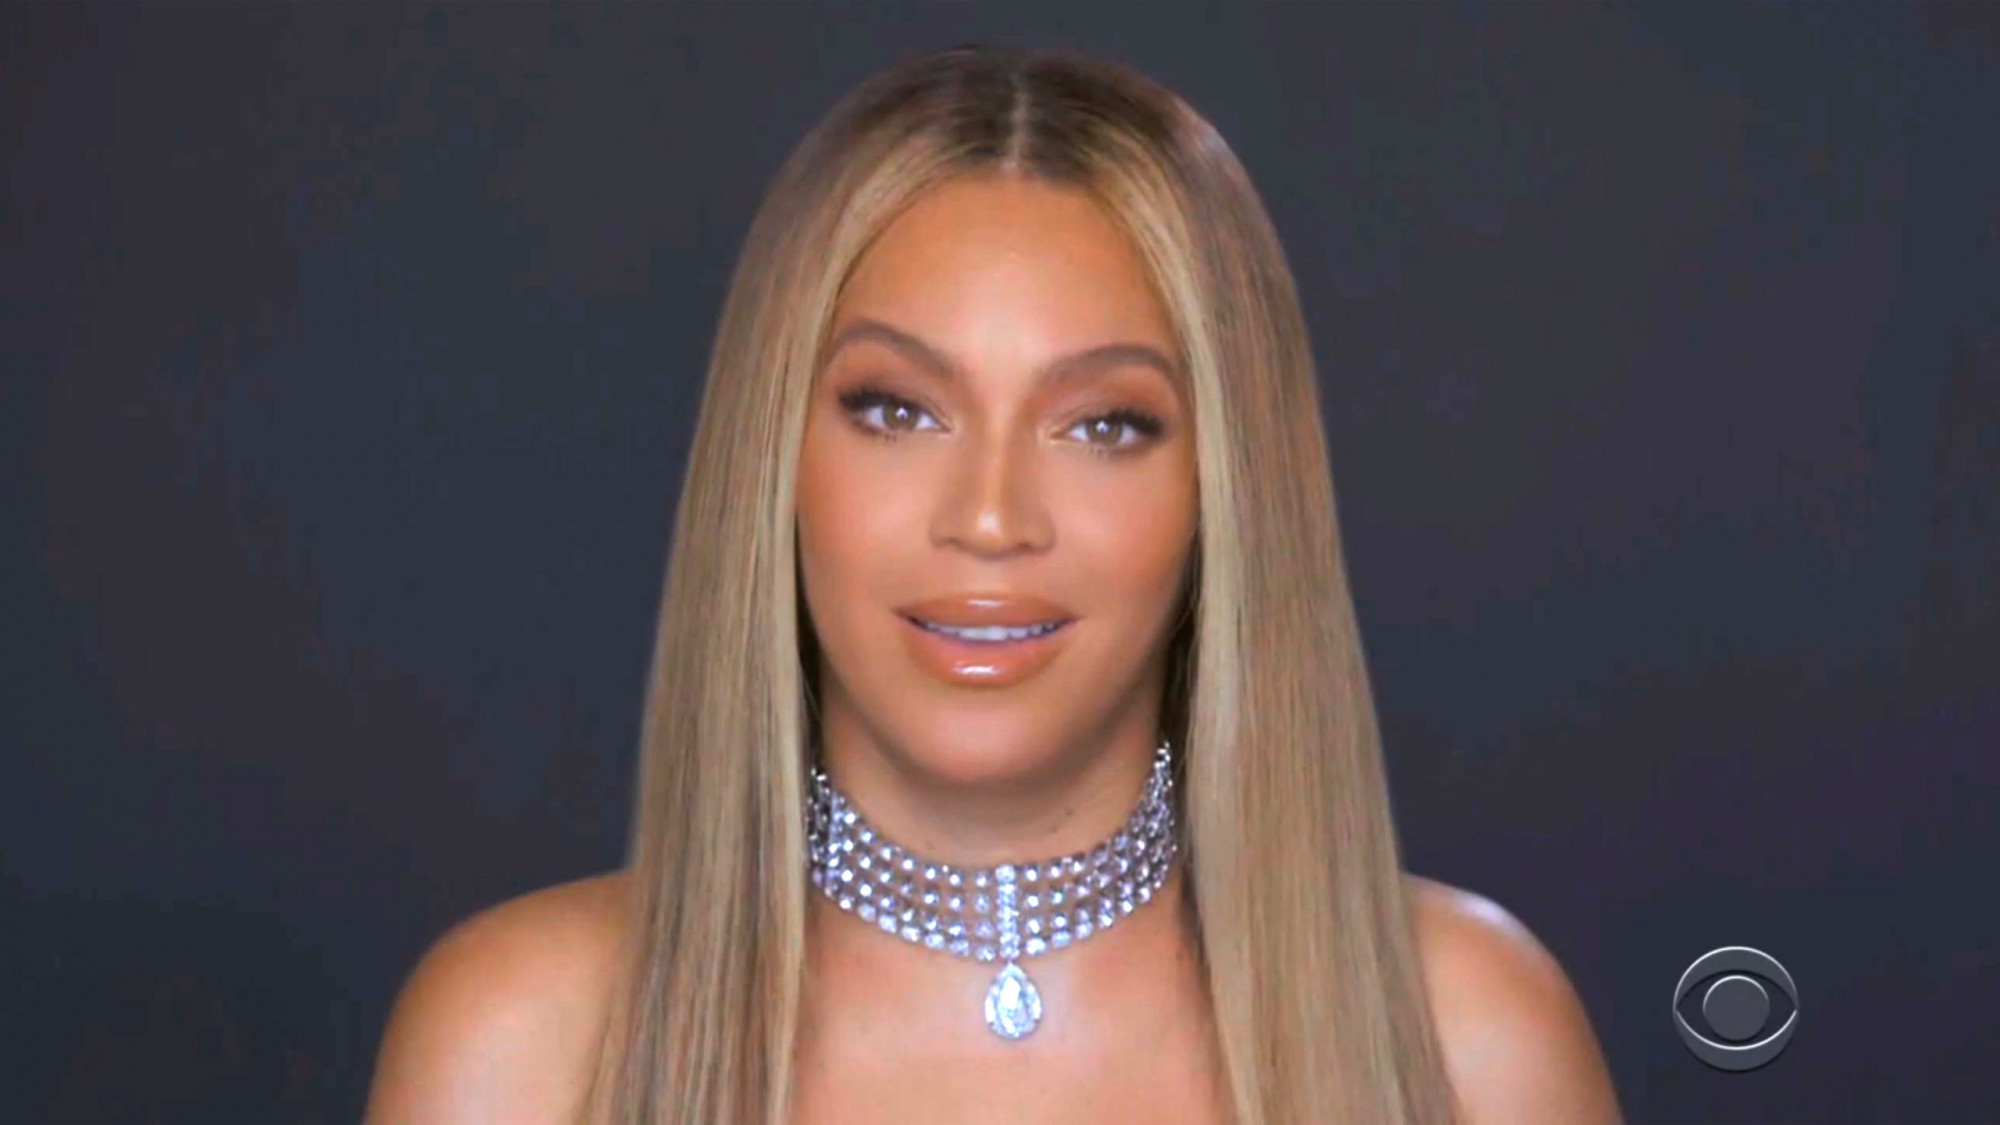  Beyonce cũng như nhiều người đẹp da màu khác, sở hữu cánh mũi thô và dày. Cô cũng chọn cách sửa đôi chút cho phù hợp gương mặt, chứ không lạm dụng dao kéo, làm mất đi nét tự nhiên.